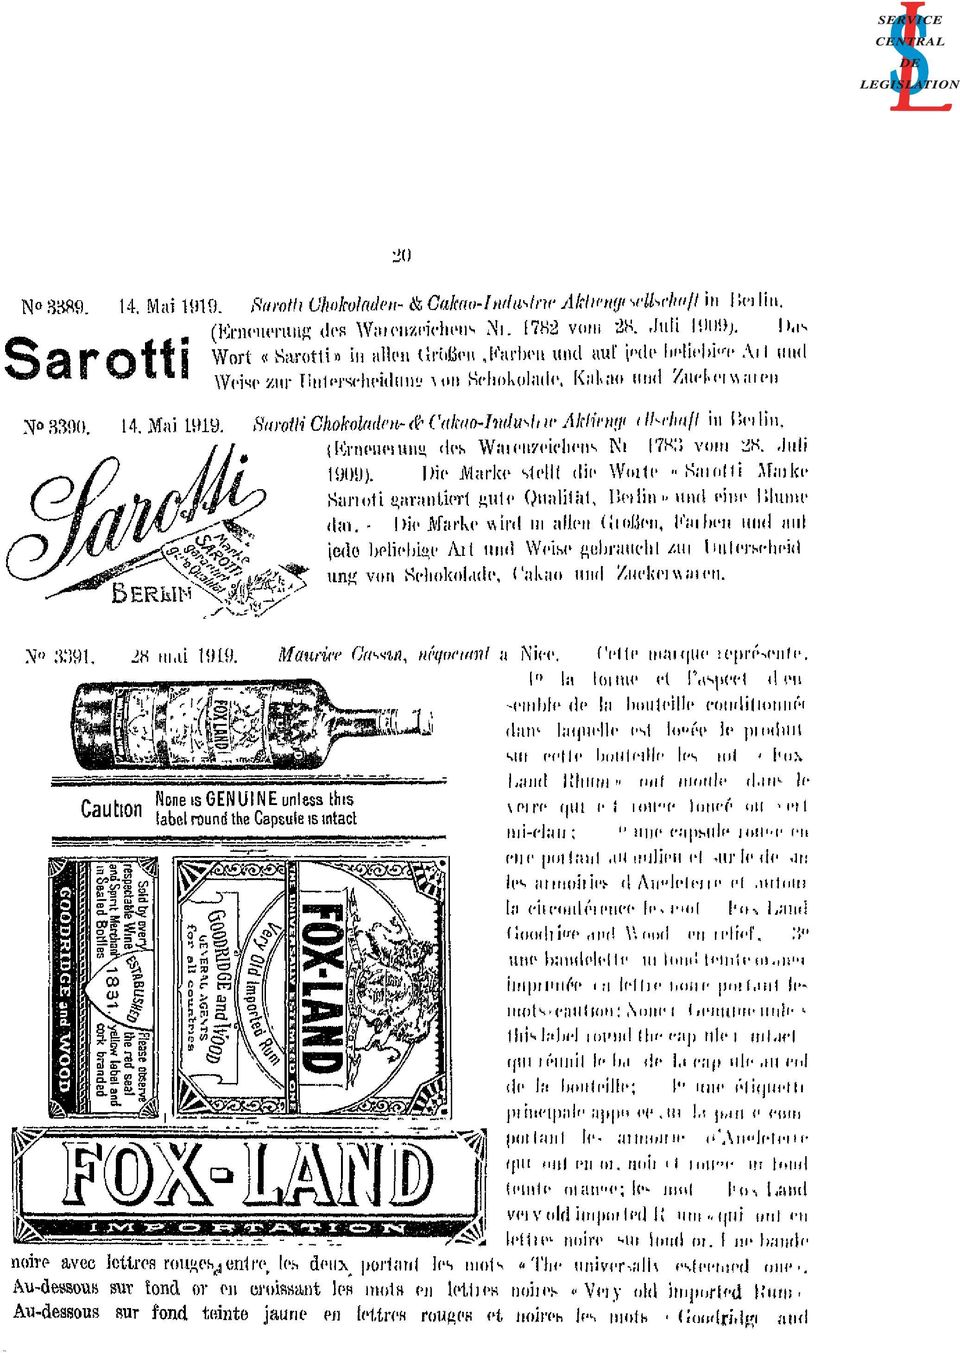 ..) in Berlin. (Erneuerung des Warenzeichens Nr 1783 vom 28. Juli 1909). Die Marke stellt die Wolle» Sarotti Marke Sarroti garantiert gute Qualität, Berlin» und eine Blume (...). - Die Marke wird (.